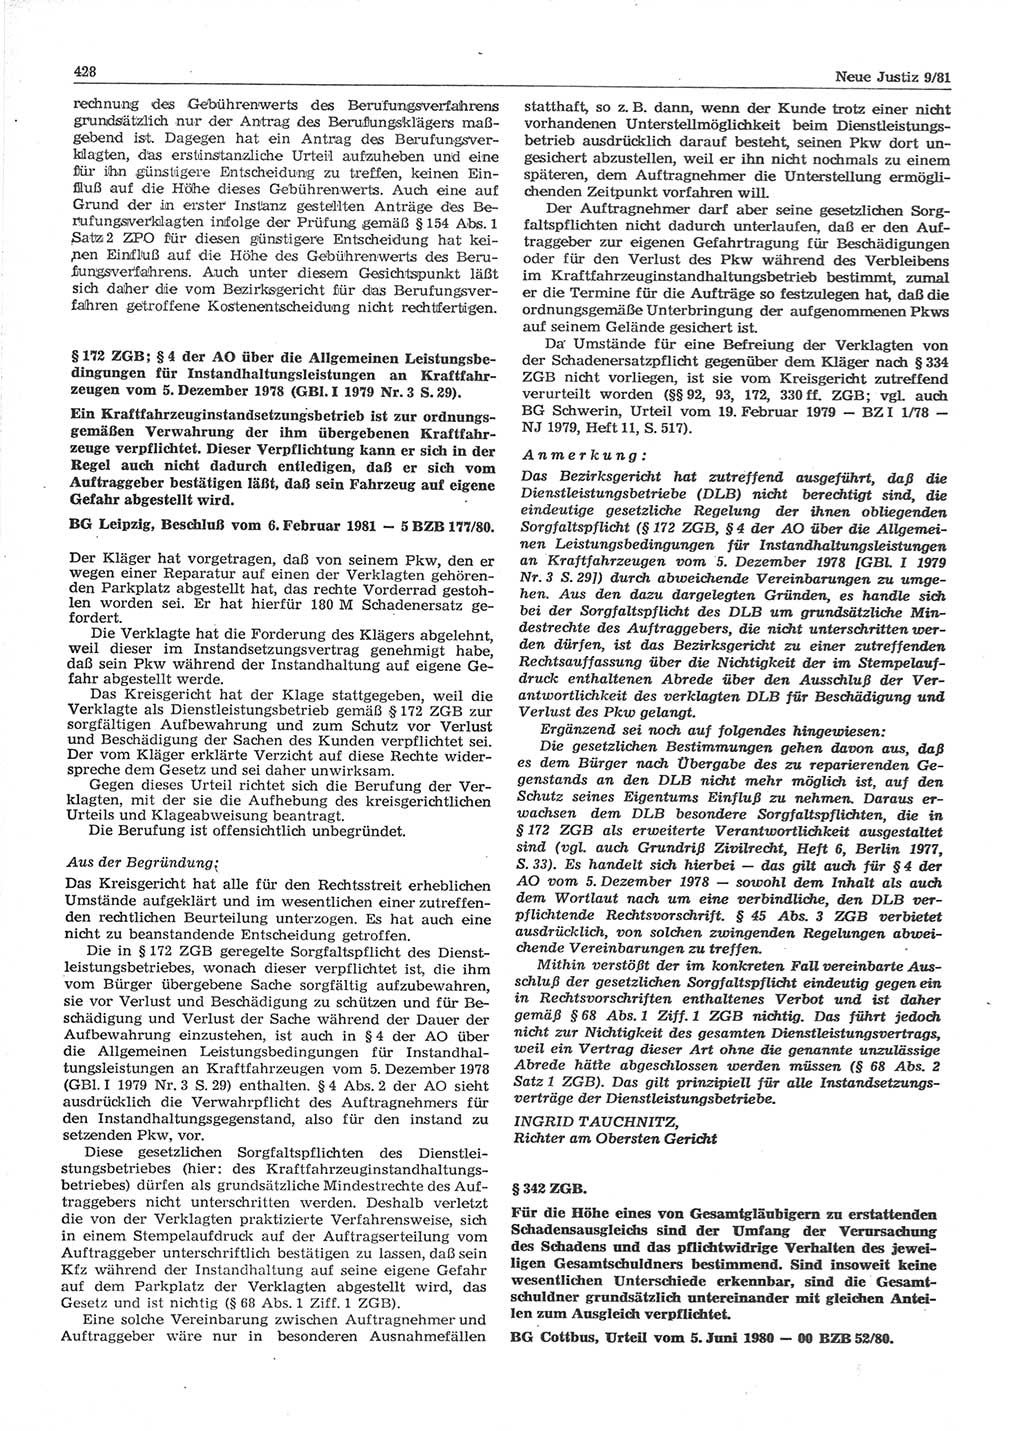 Neue Justiz (NJ), Zeitschrift für sozialistisches Recht und Gesetzlichkeit [Deutsche Demokratische Republik (DDR)], 35. Jahrgang 1981, Seite 428 (NJ DDR 1981, S. 428)